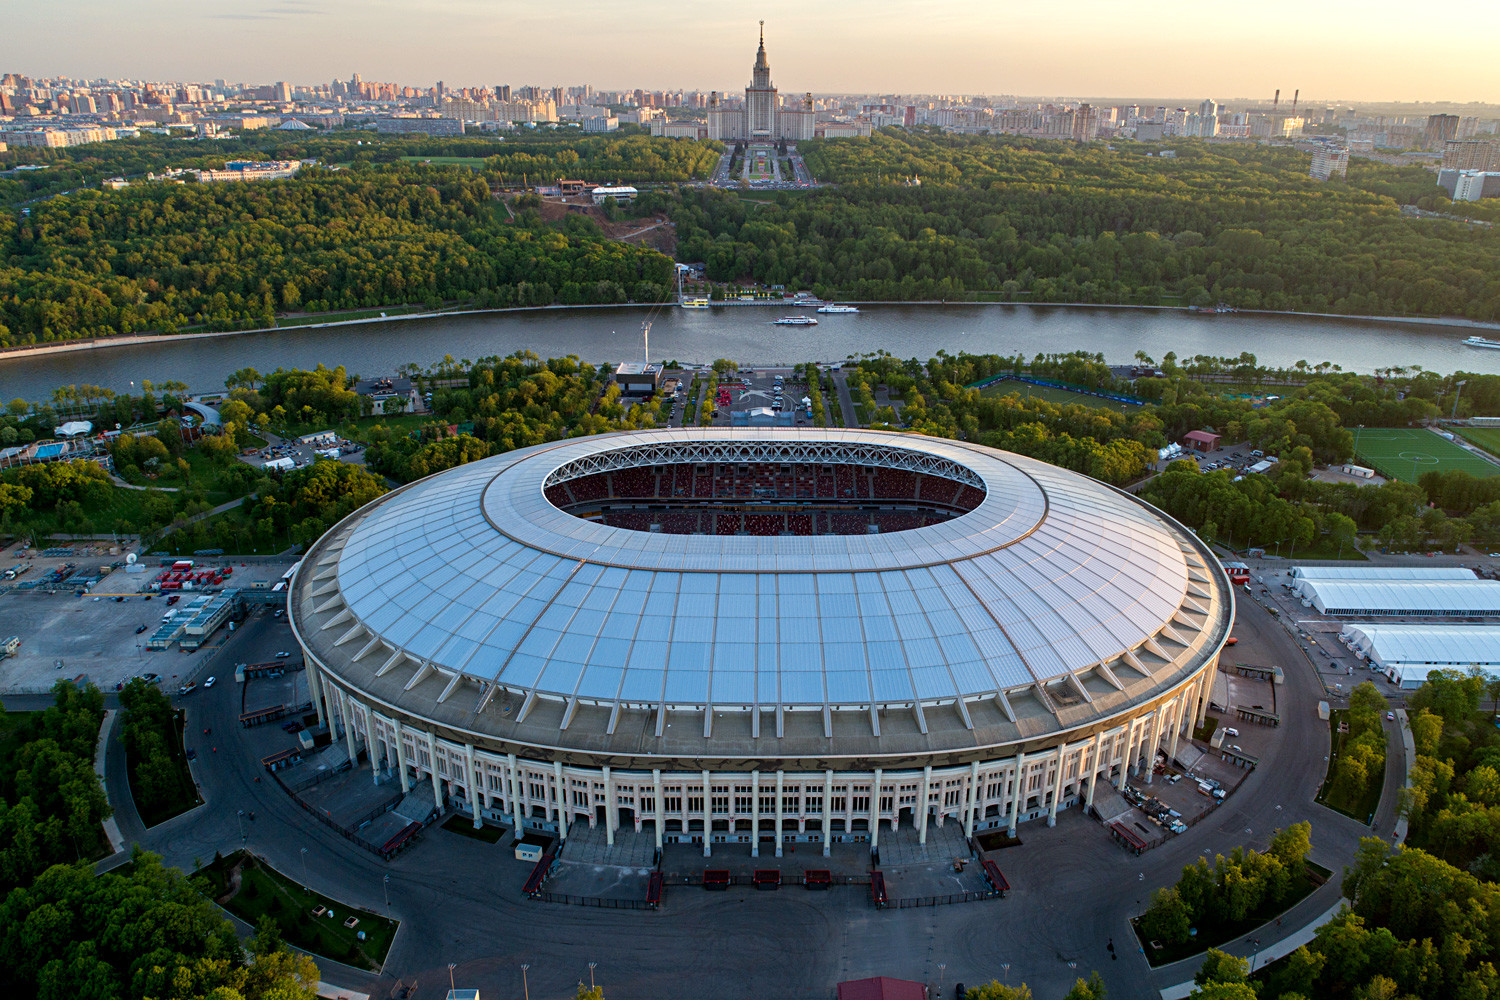 An aerial view of Luzhniki Stadium